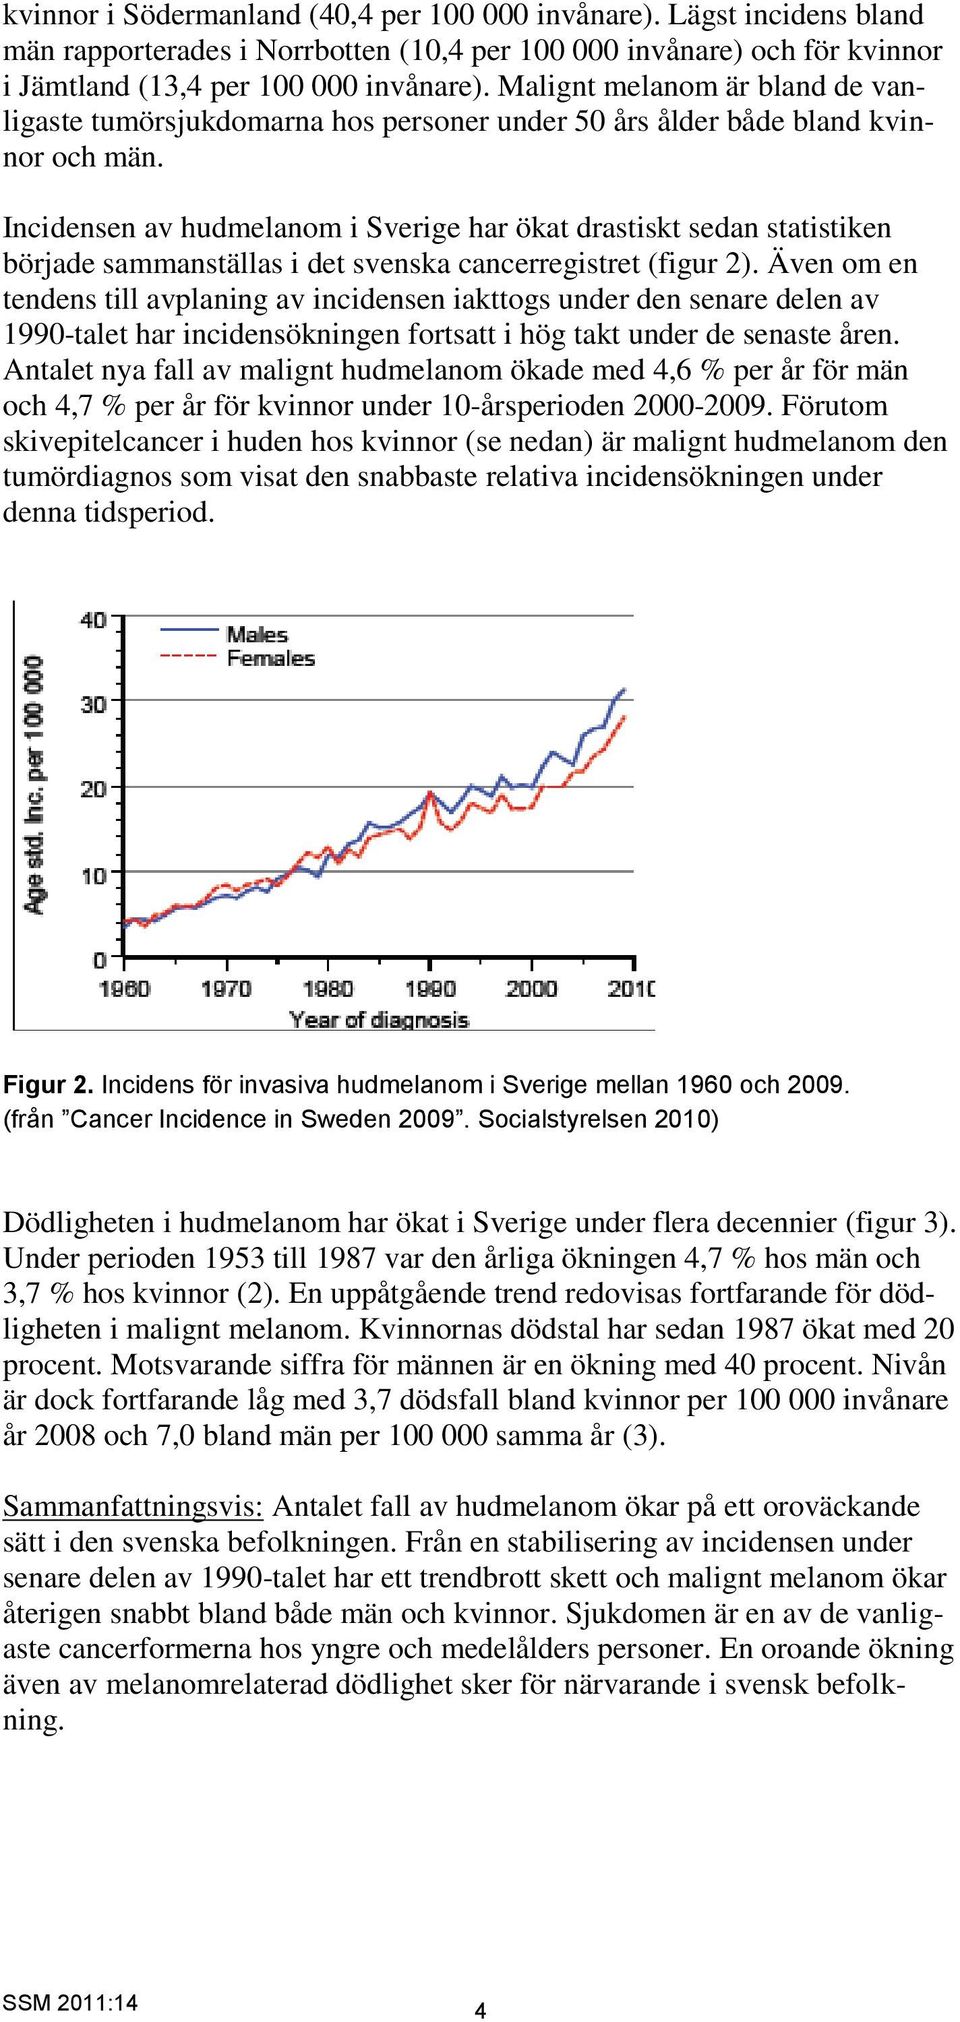 Incidensen av hudmelanom i Sverige har ökat drastiskt sedan statistiken började sammanställas i det svenska cancerregistret (figur 2).